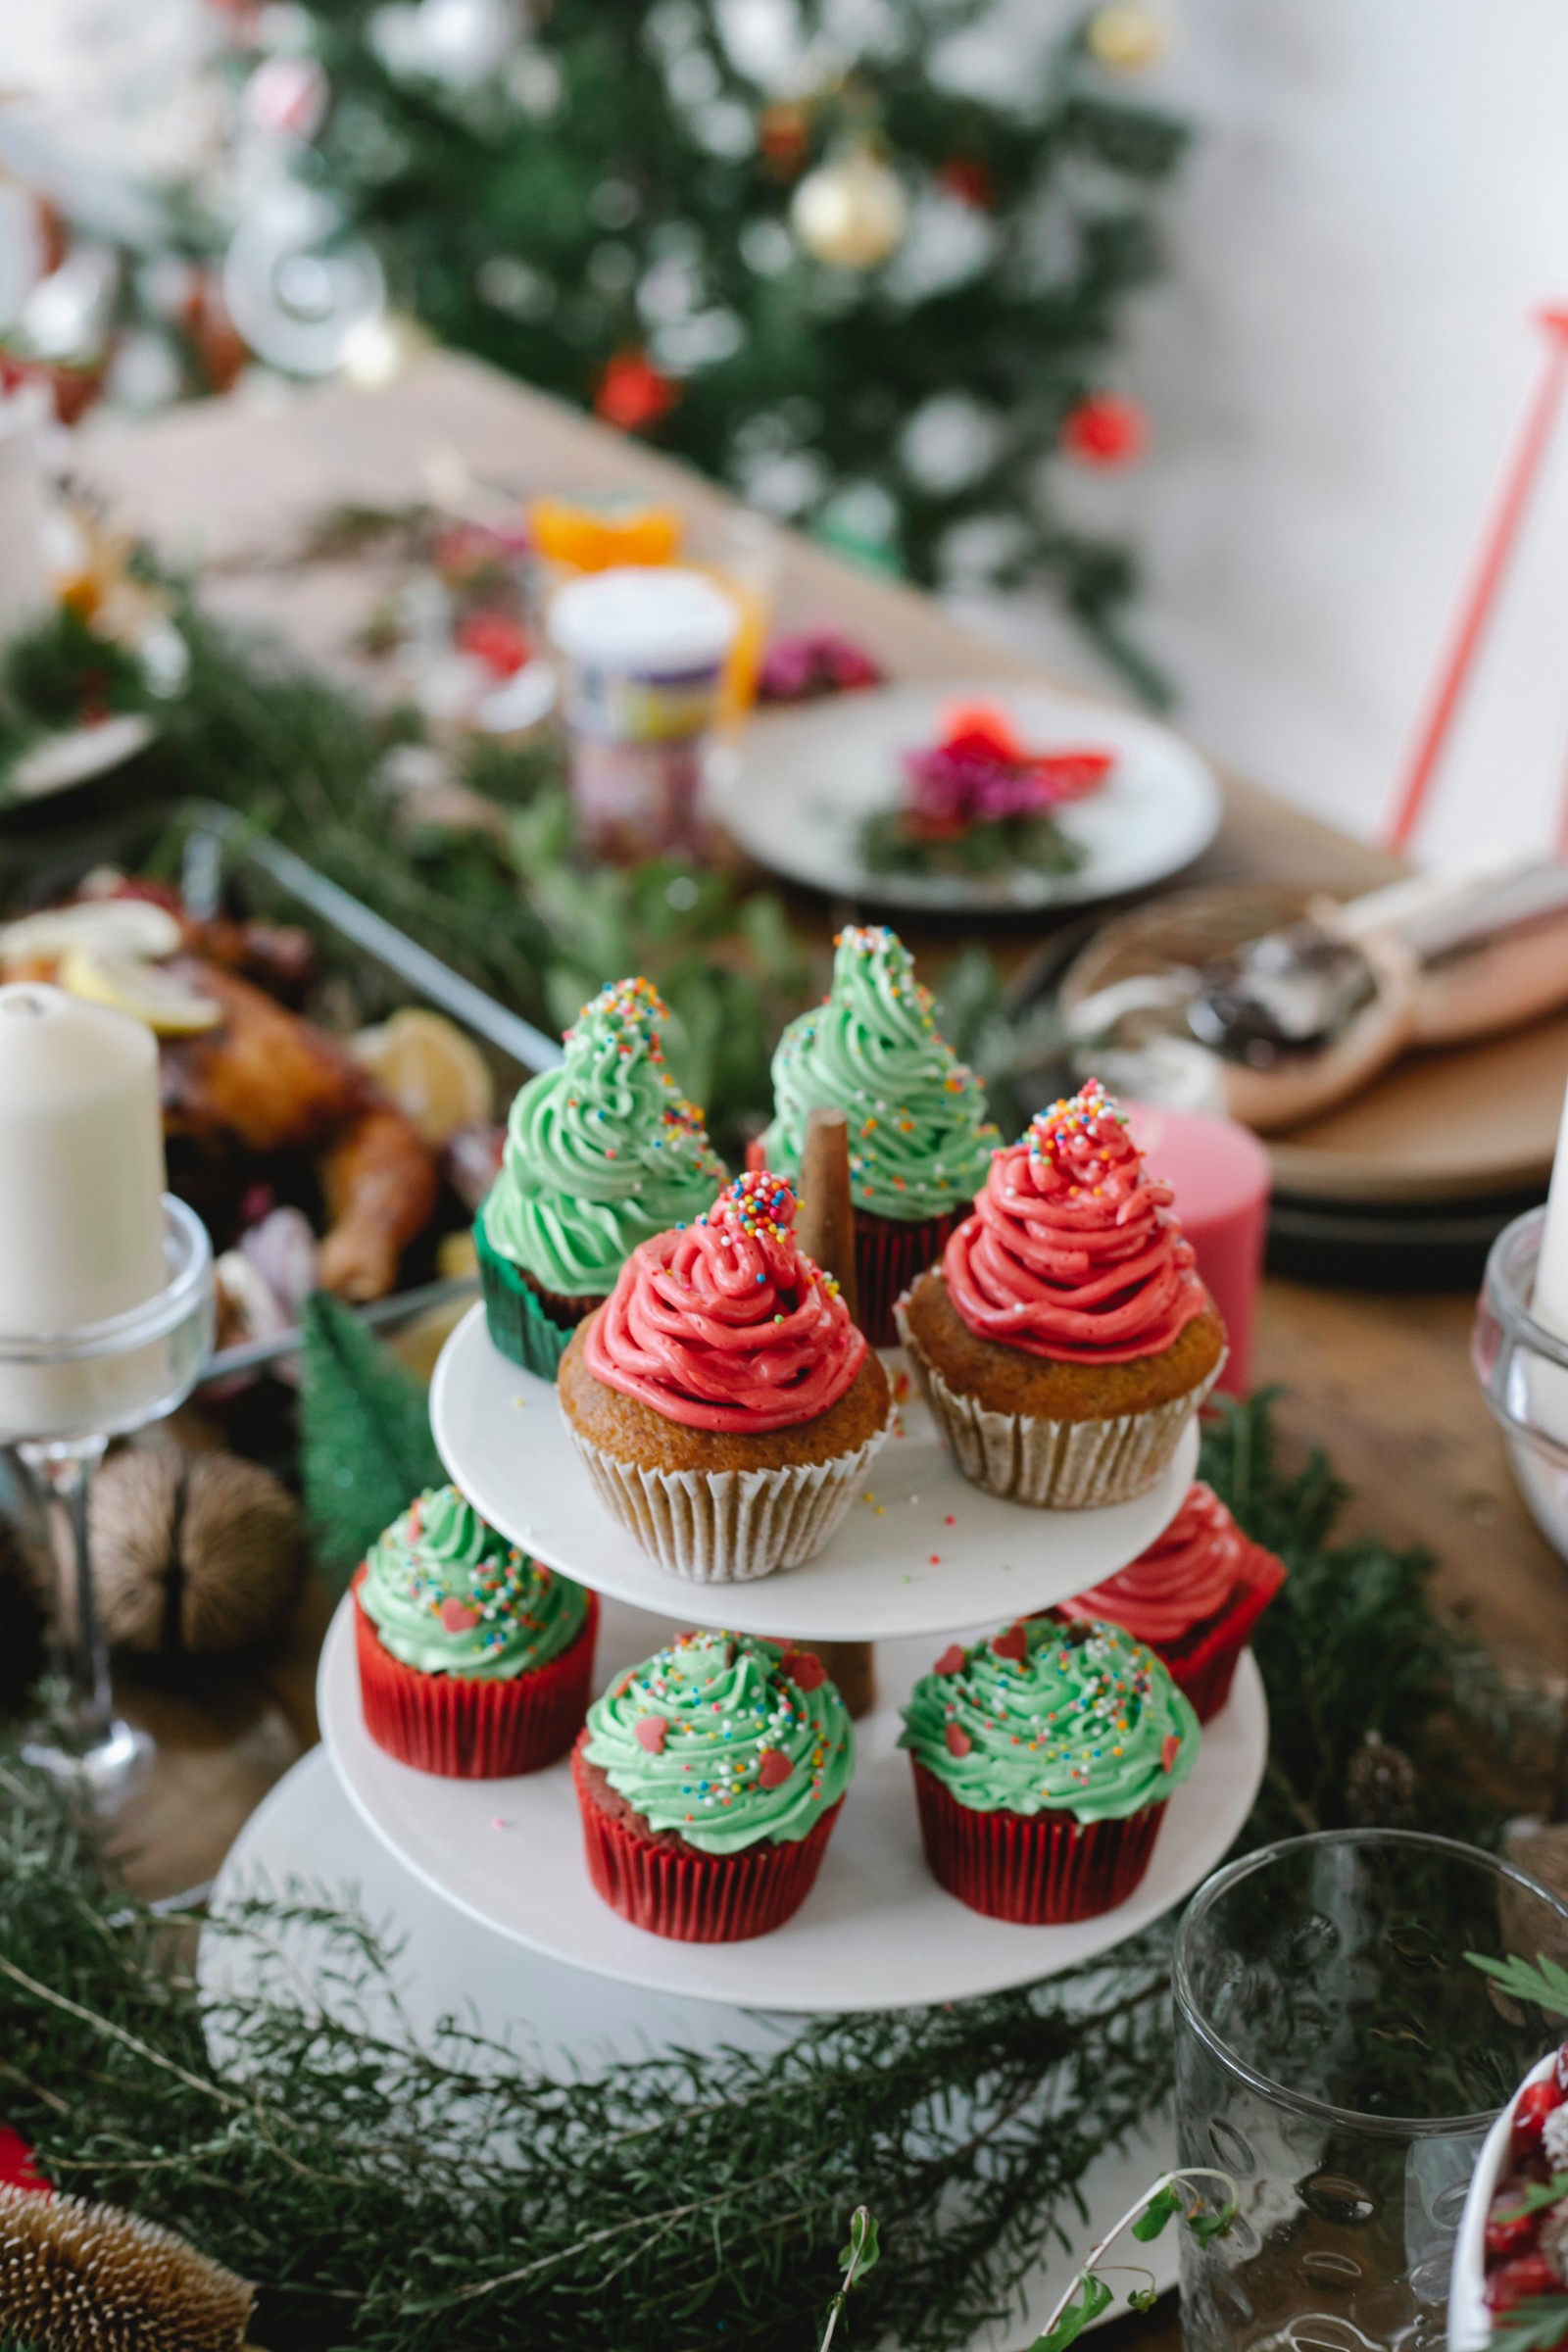 O Cupcake é aquele bolinho macio e cheiroso! E pode virar a atração principal da Ceia de Ano Novo! / GB Imagem